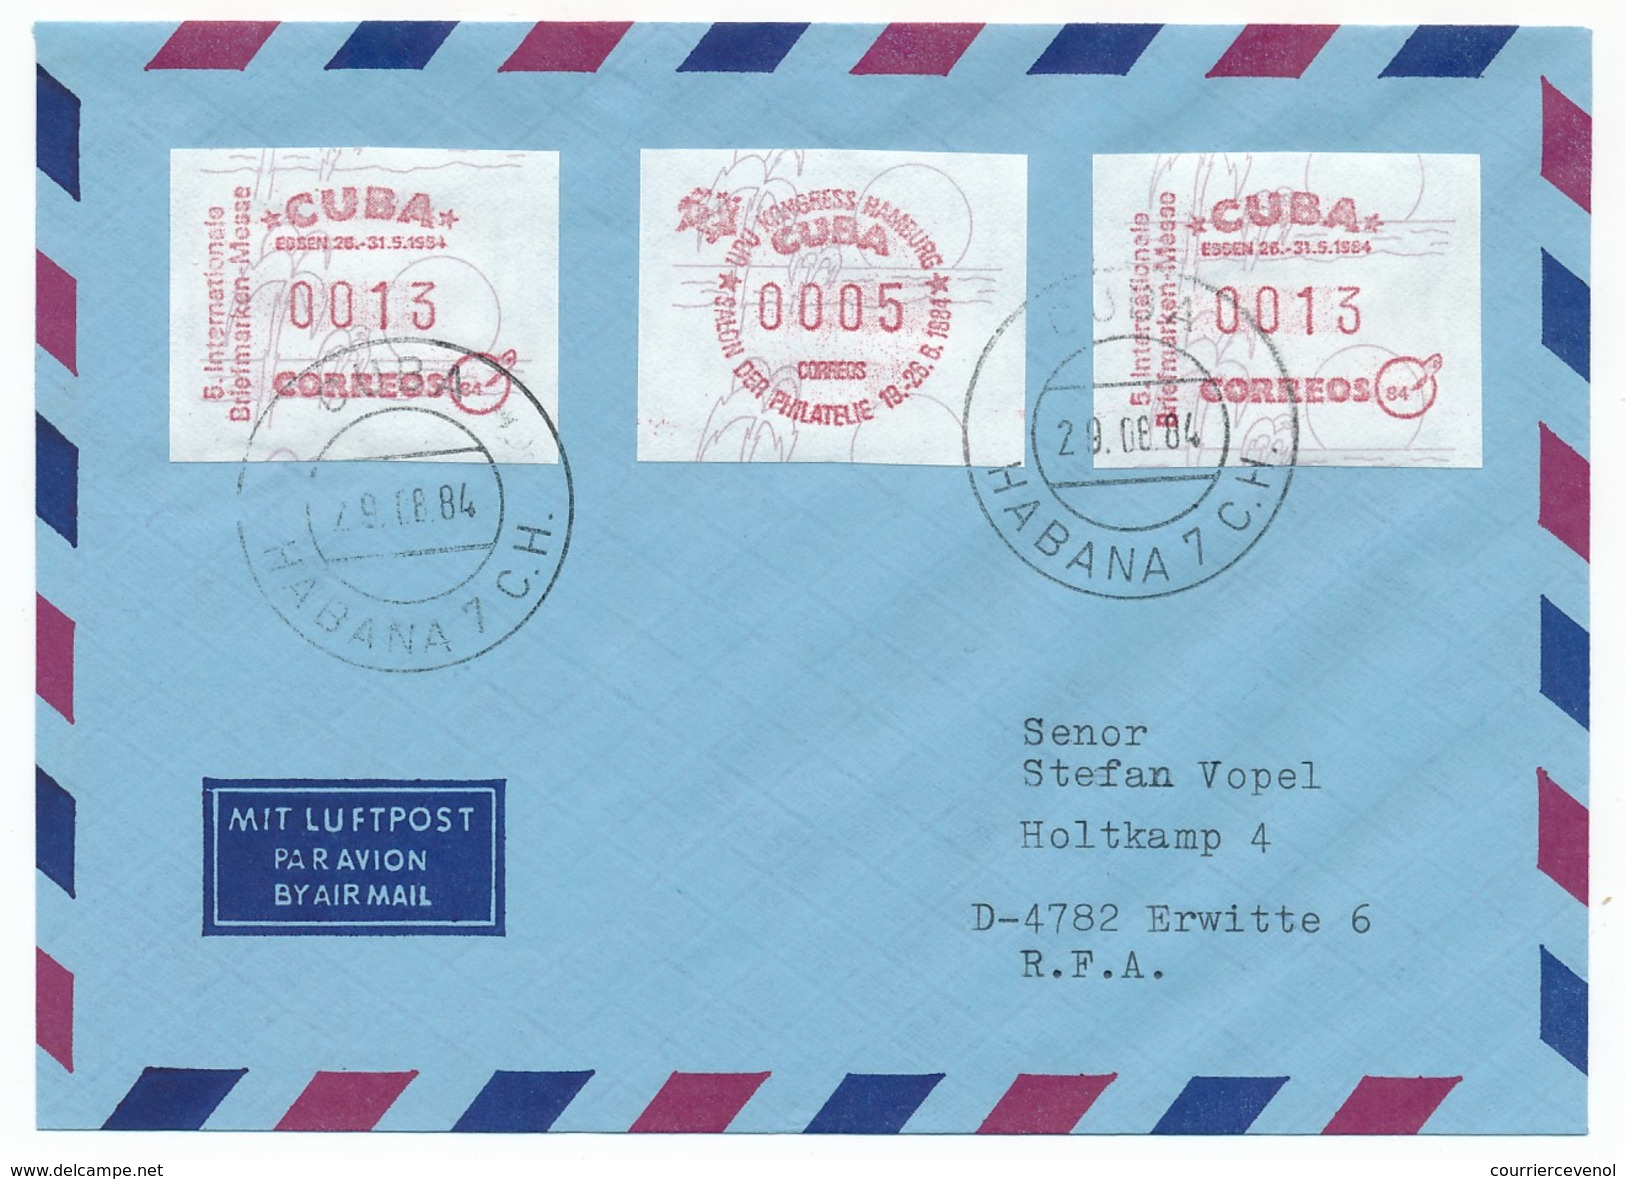 CUBA - 12 docs (cartons + enveloppes) affranchies vignettes d'affranchissement - Salon philatélique de Hambourg - 1984